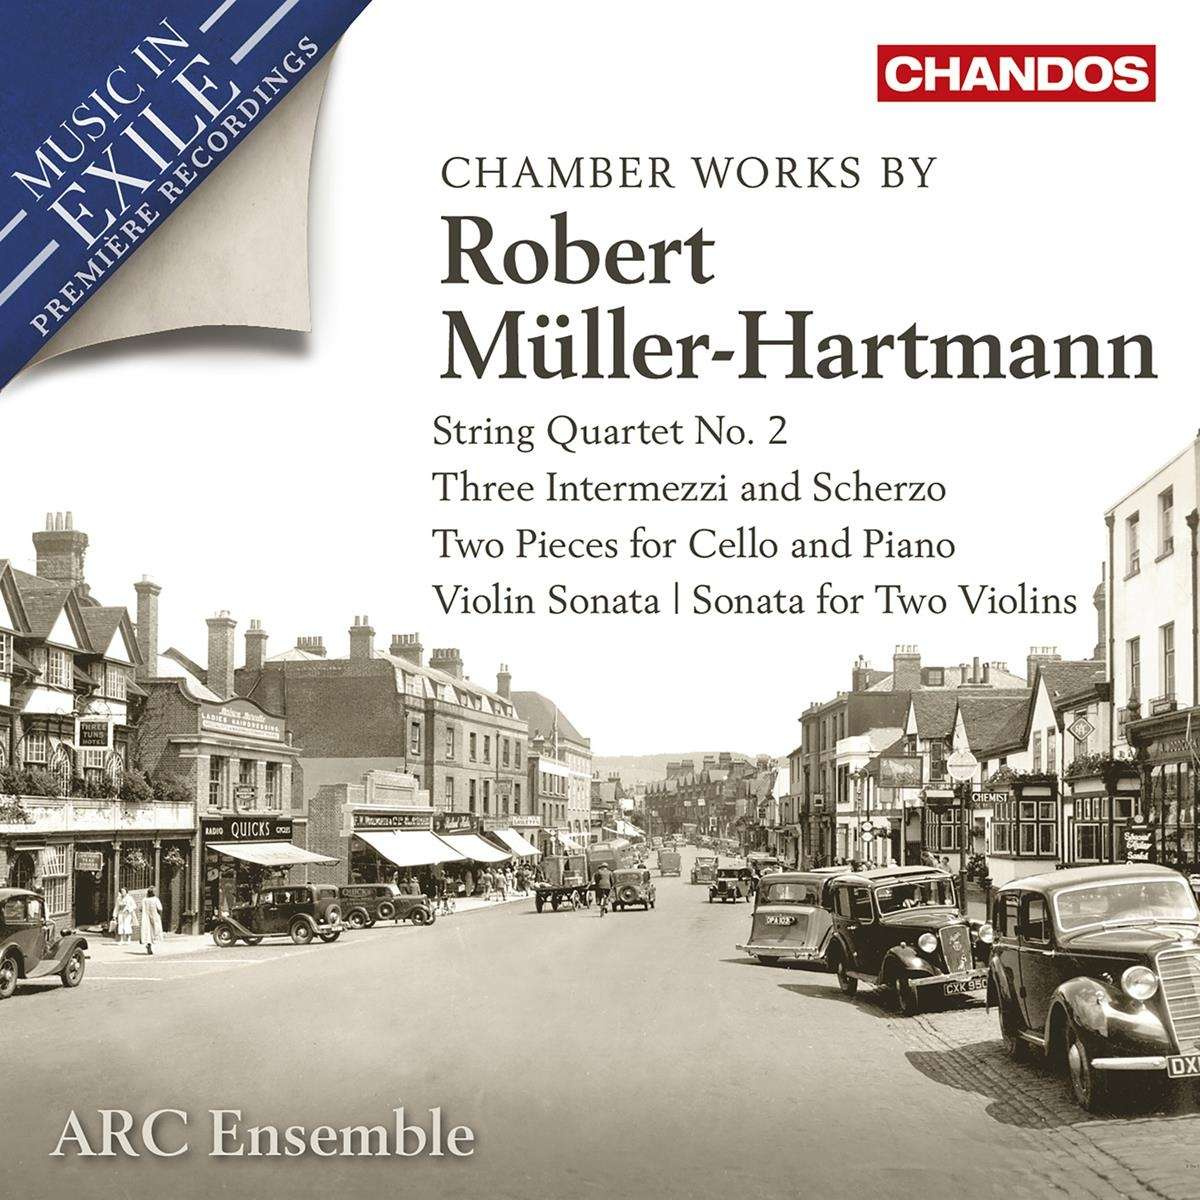 Arc Ensemble - Robert Müller-Hartmann: Chamber Works - Photo 1/1